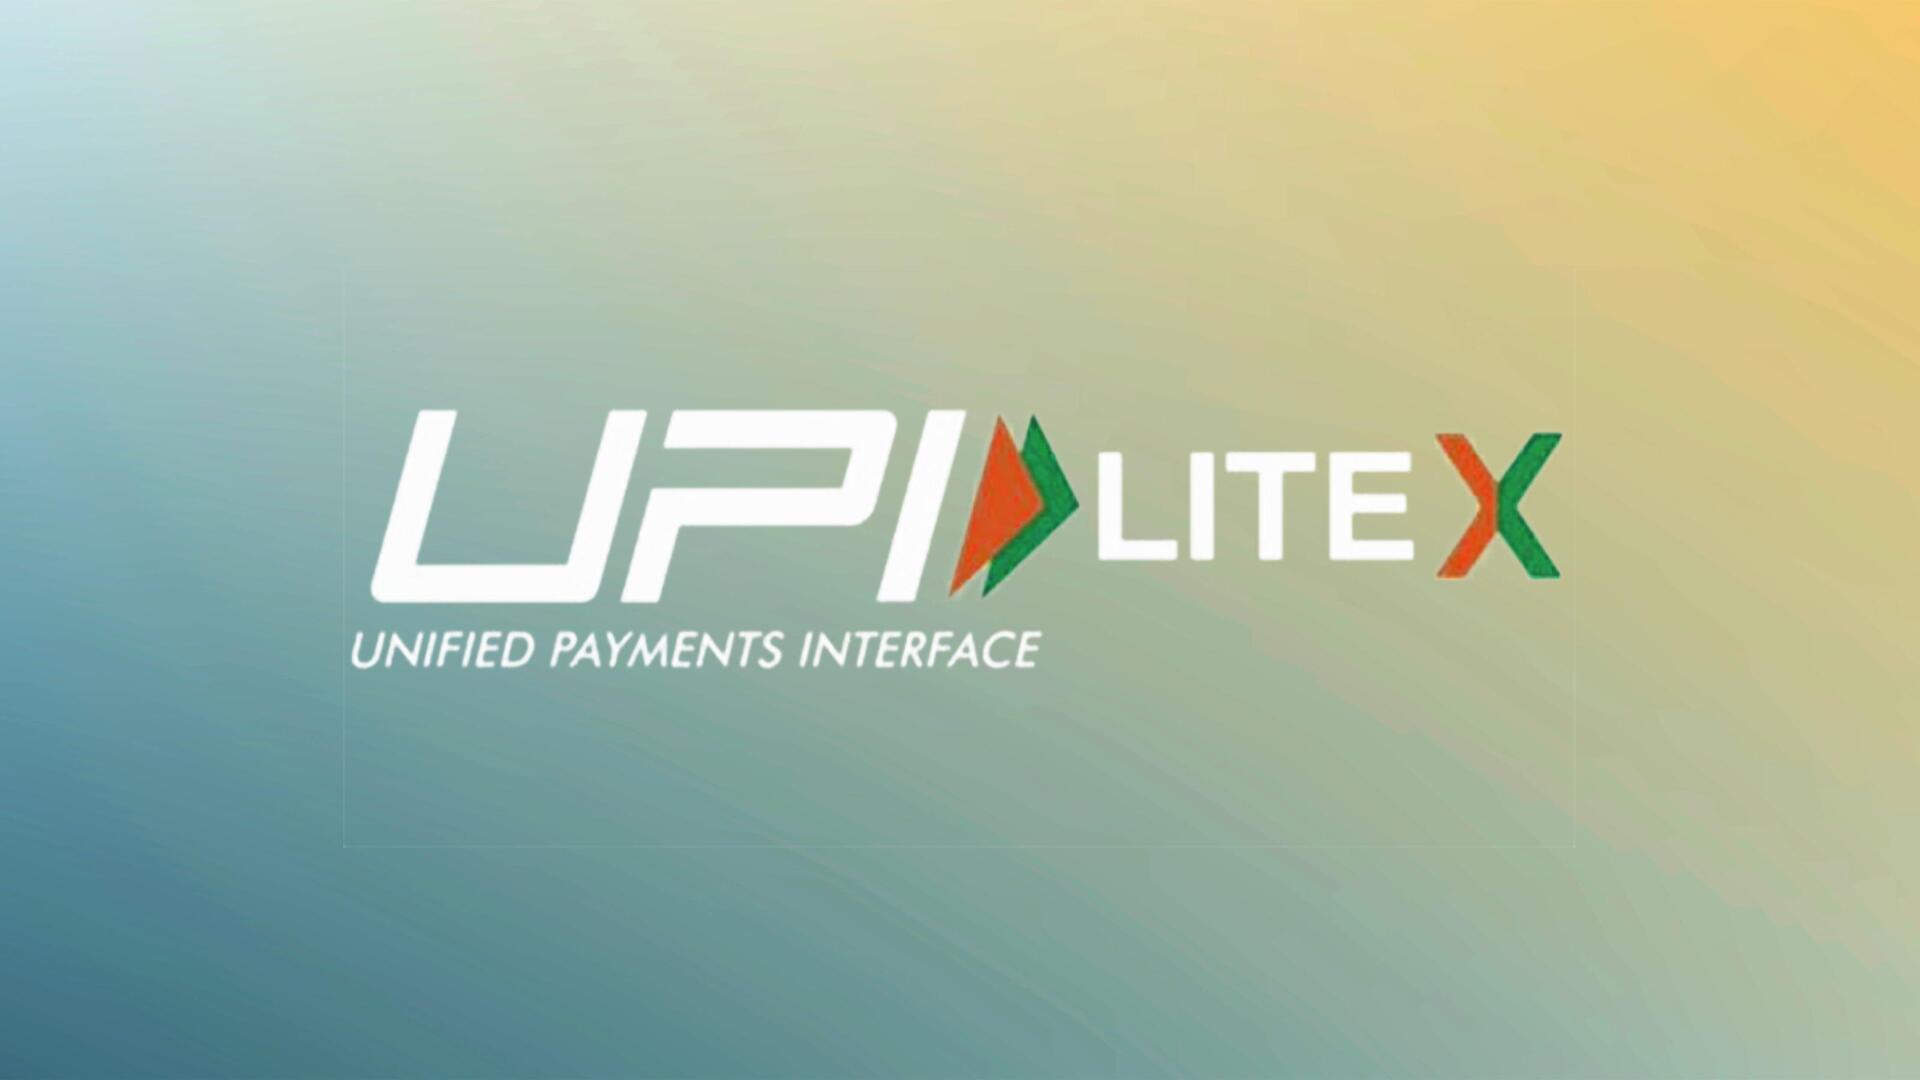 How to set up UPI Lite X for offline transactions